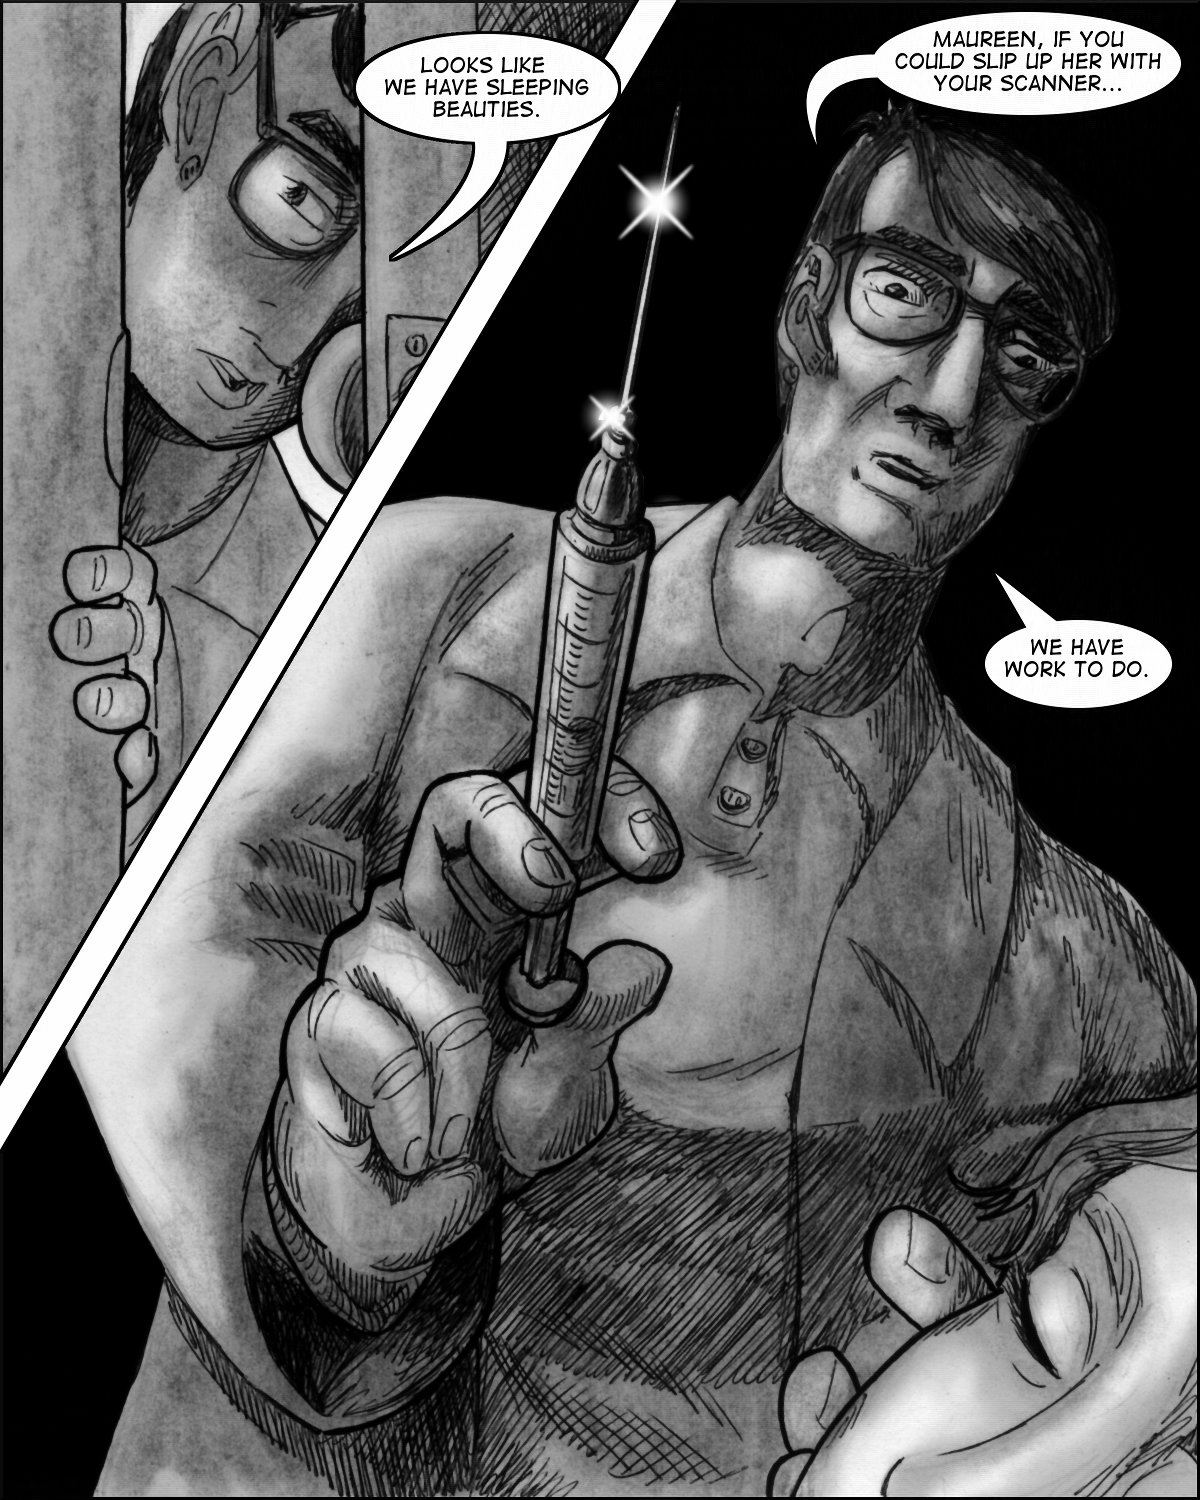 Aloysius wields a scary needle and syringe.